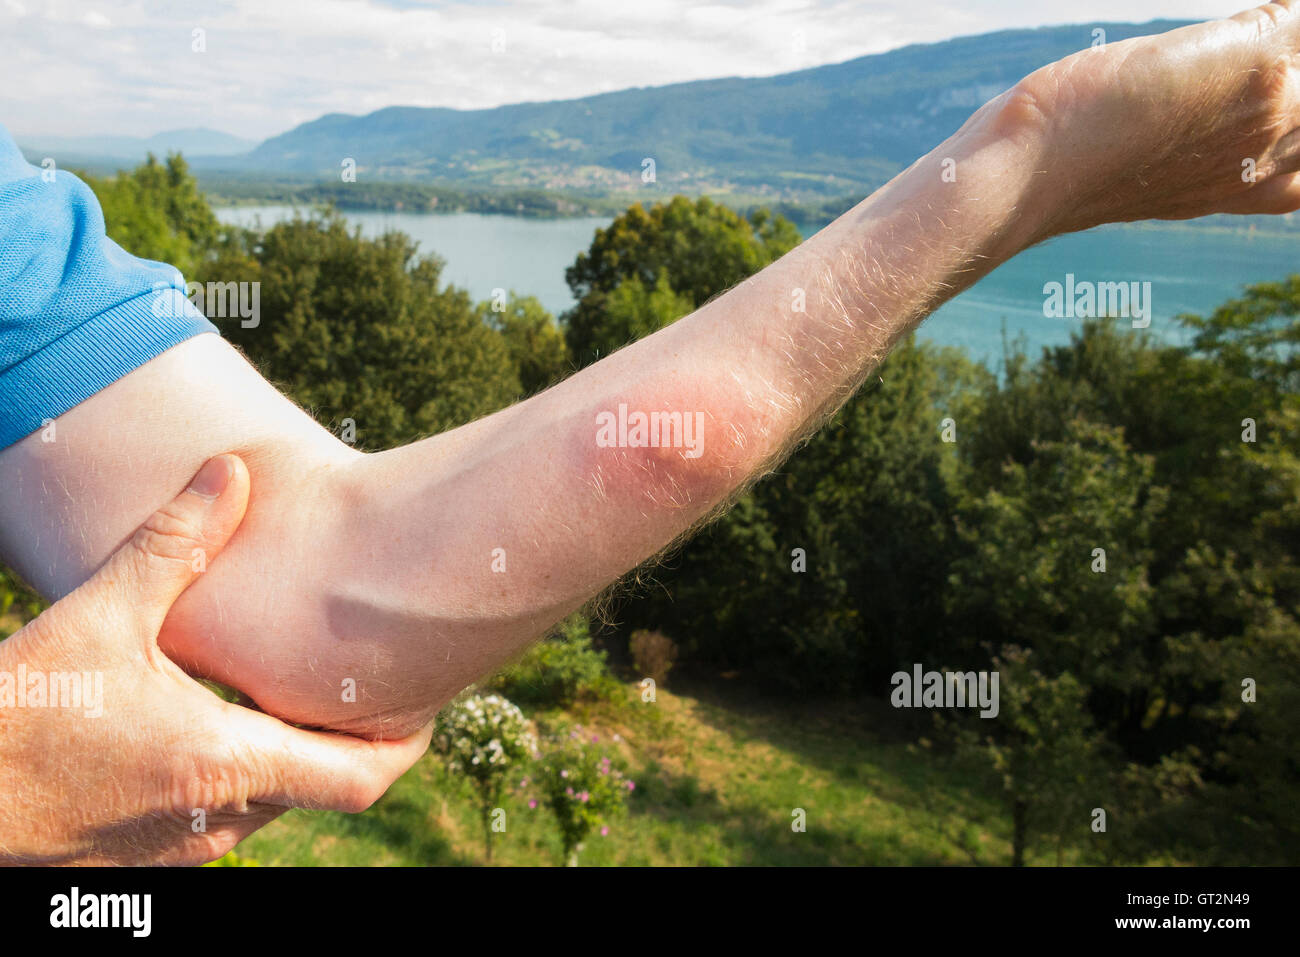 Il braccio rialzato di un nuotatore turistico britannico con infiammazione causata dal furto di una "pulce d'anatra" ("puces de canard" in francese). LAC du Bourget, dove il nuotatore nuotava, è visibile in lontananza. Foto Stock